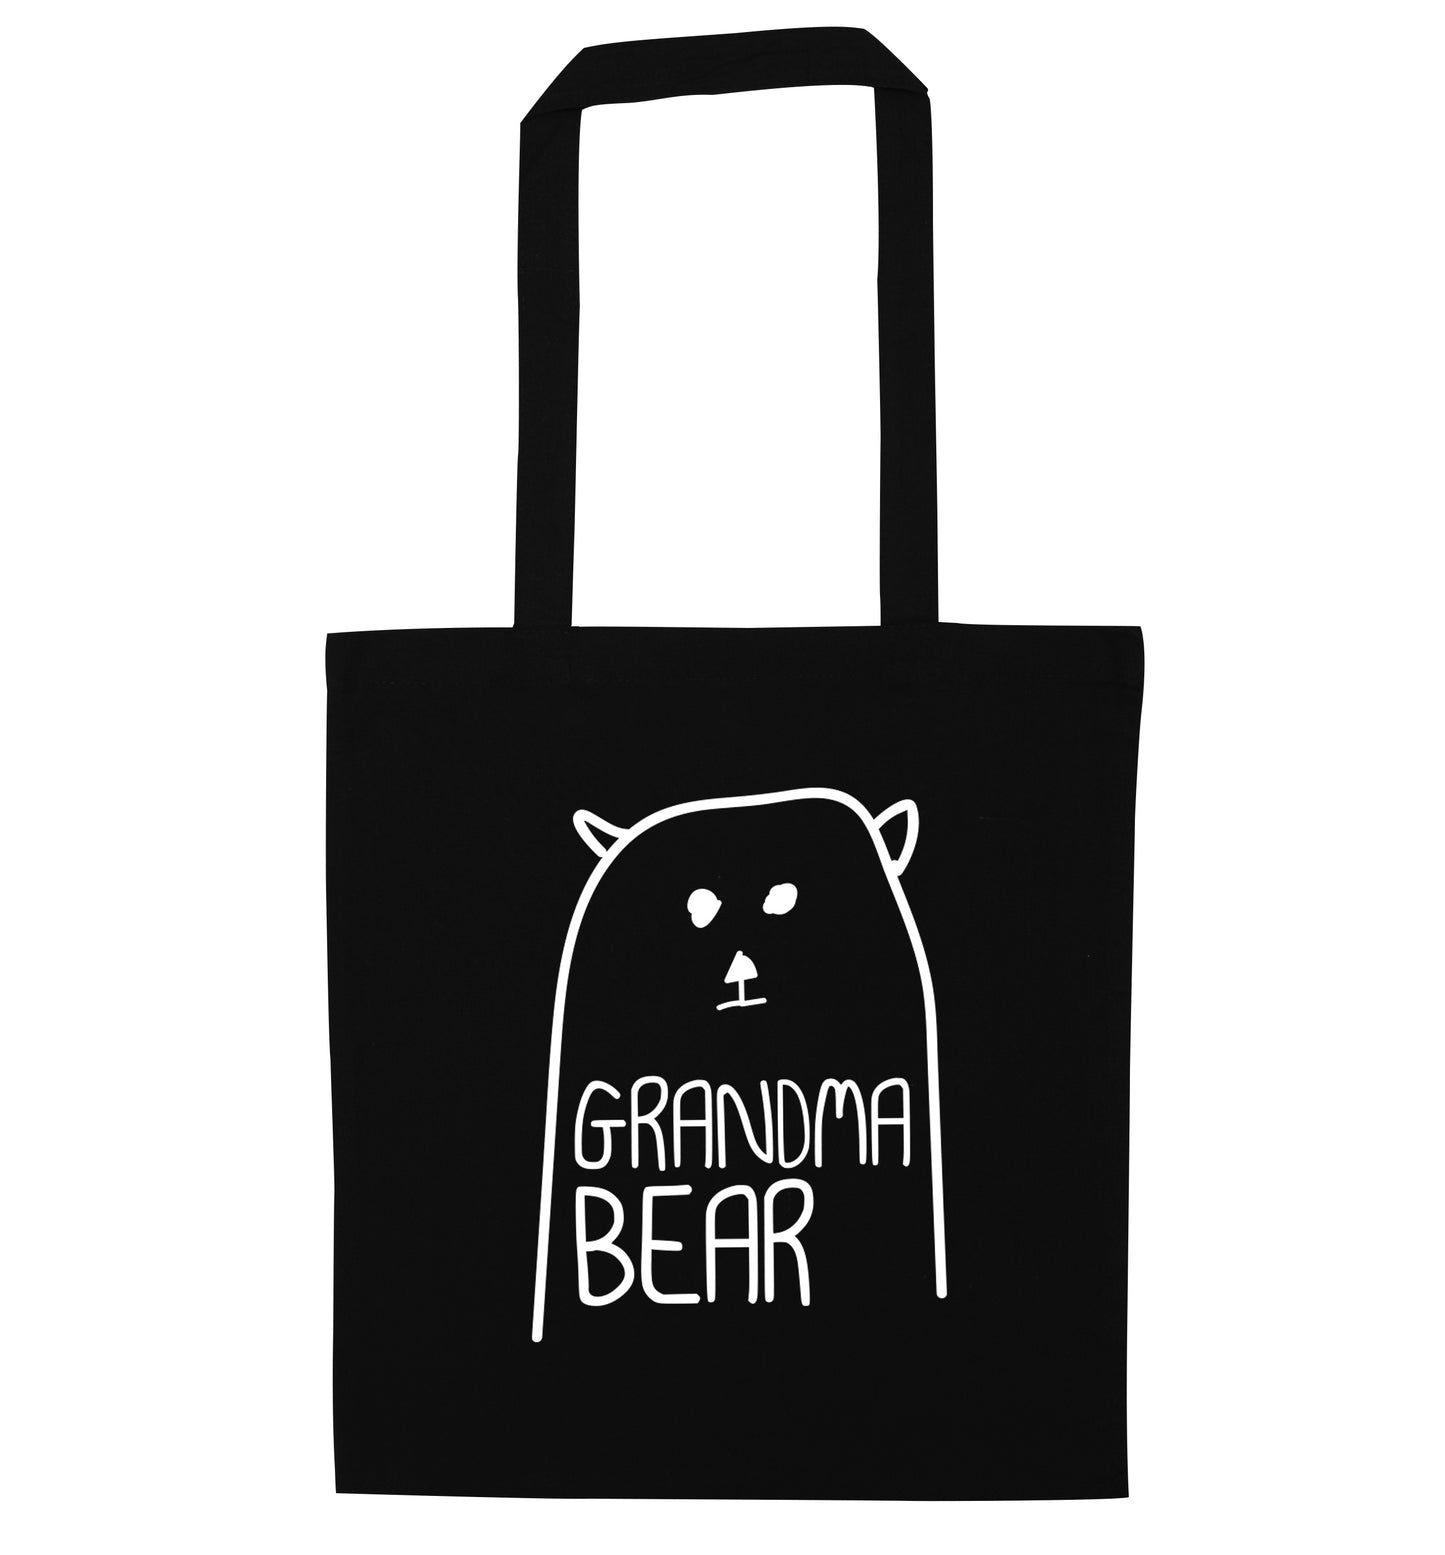 Grandma bear black tote bag